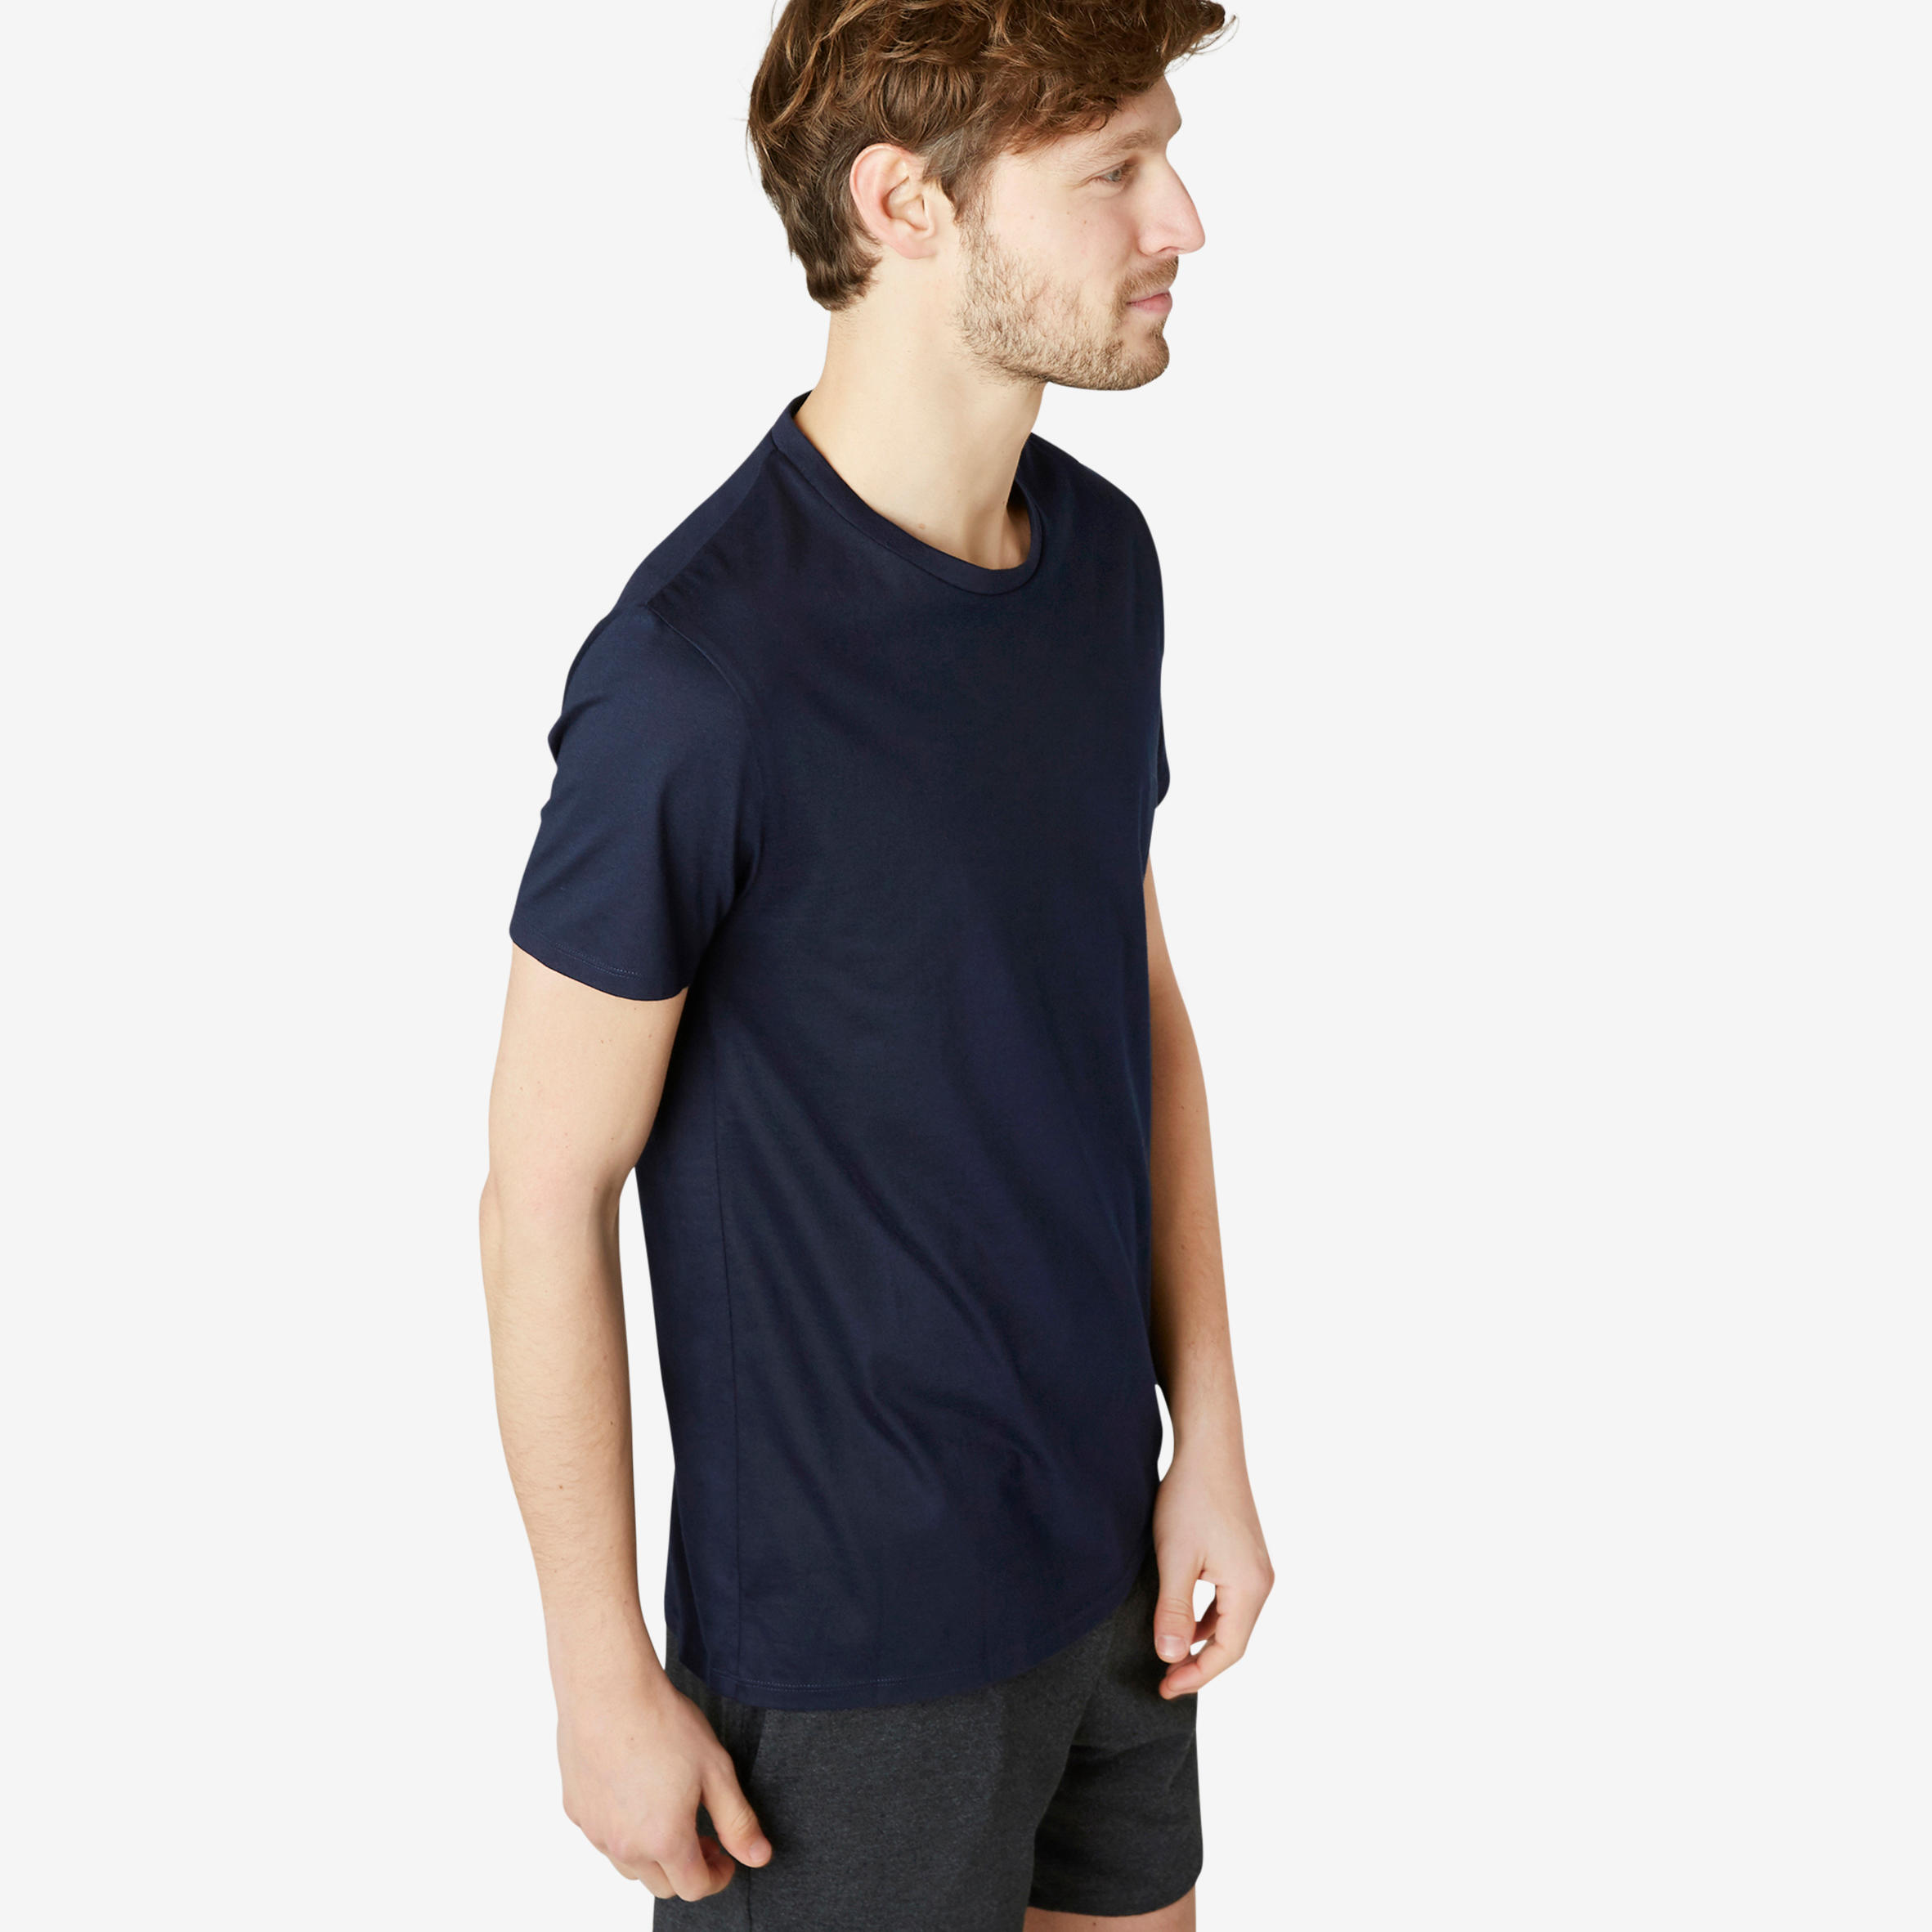 Men's Fitness T-Shirt Sportee 100 - Navy Blue